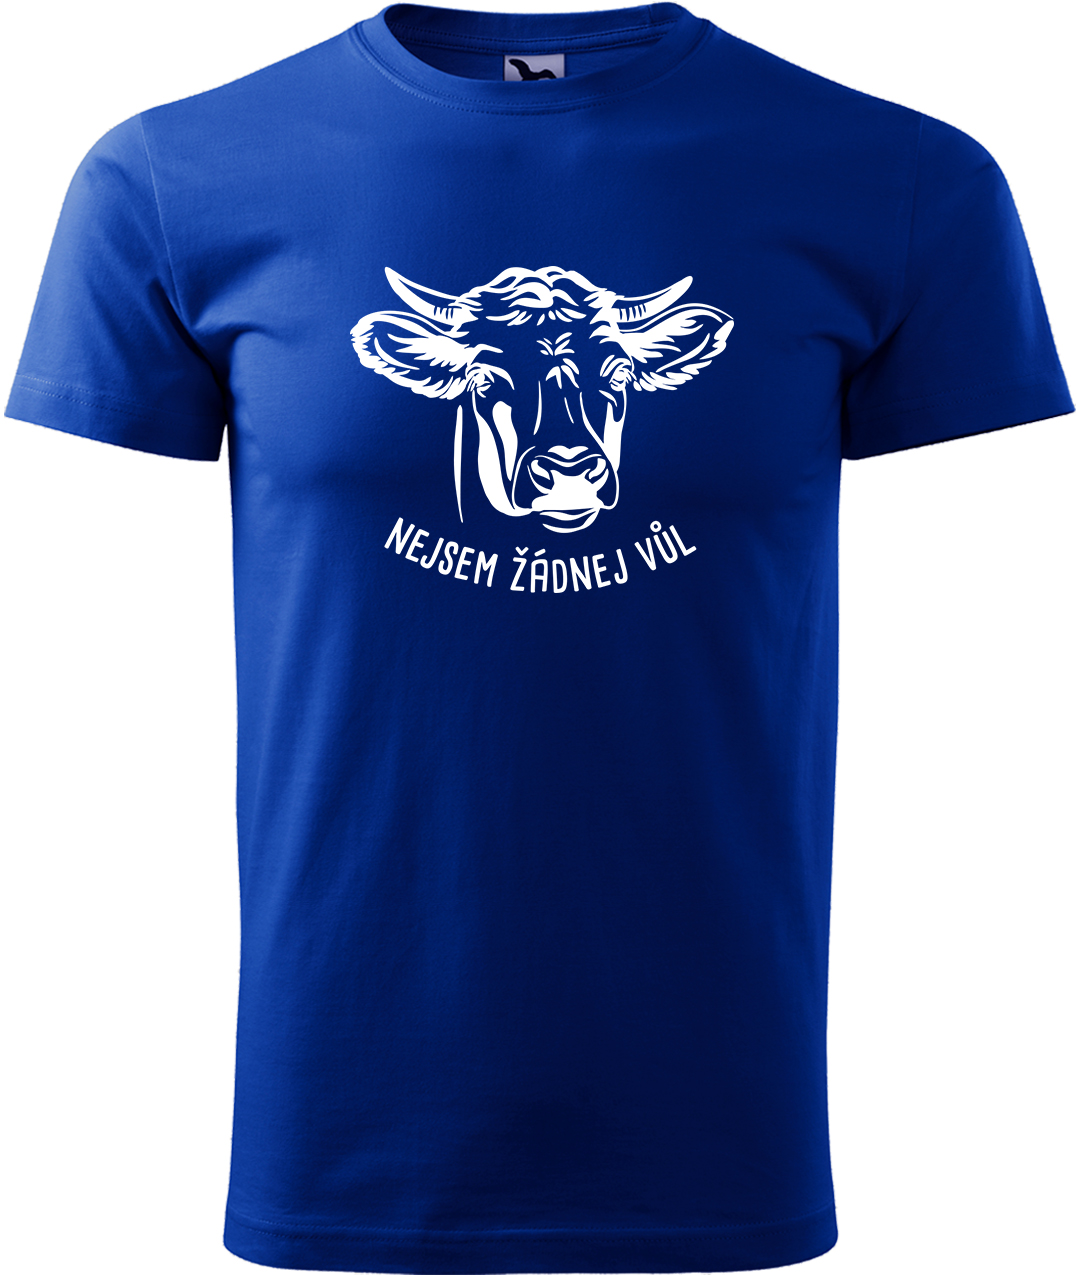 Pánské tričko s krávou - Nejsem žádnej vůl Velikost: XL, Barva: Královská modrá (05), Střih: pánský